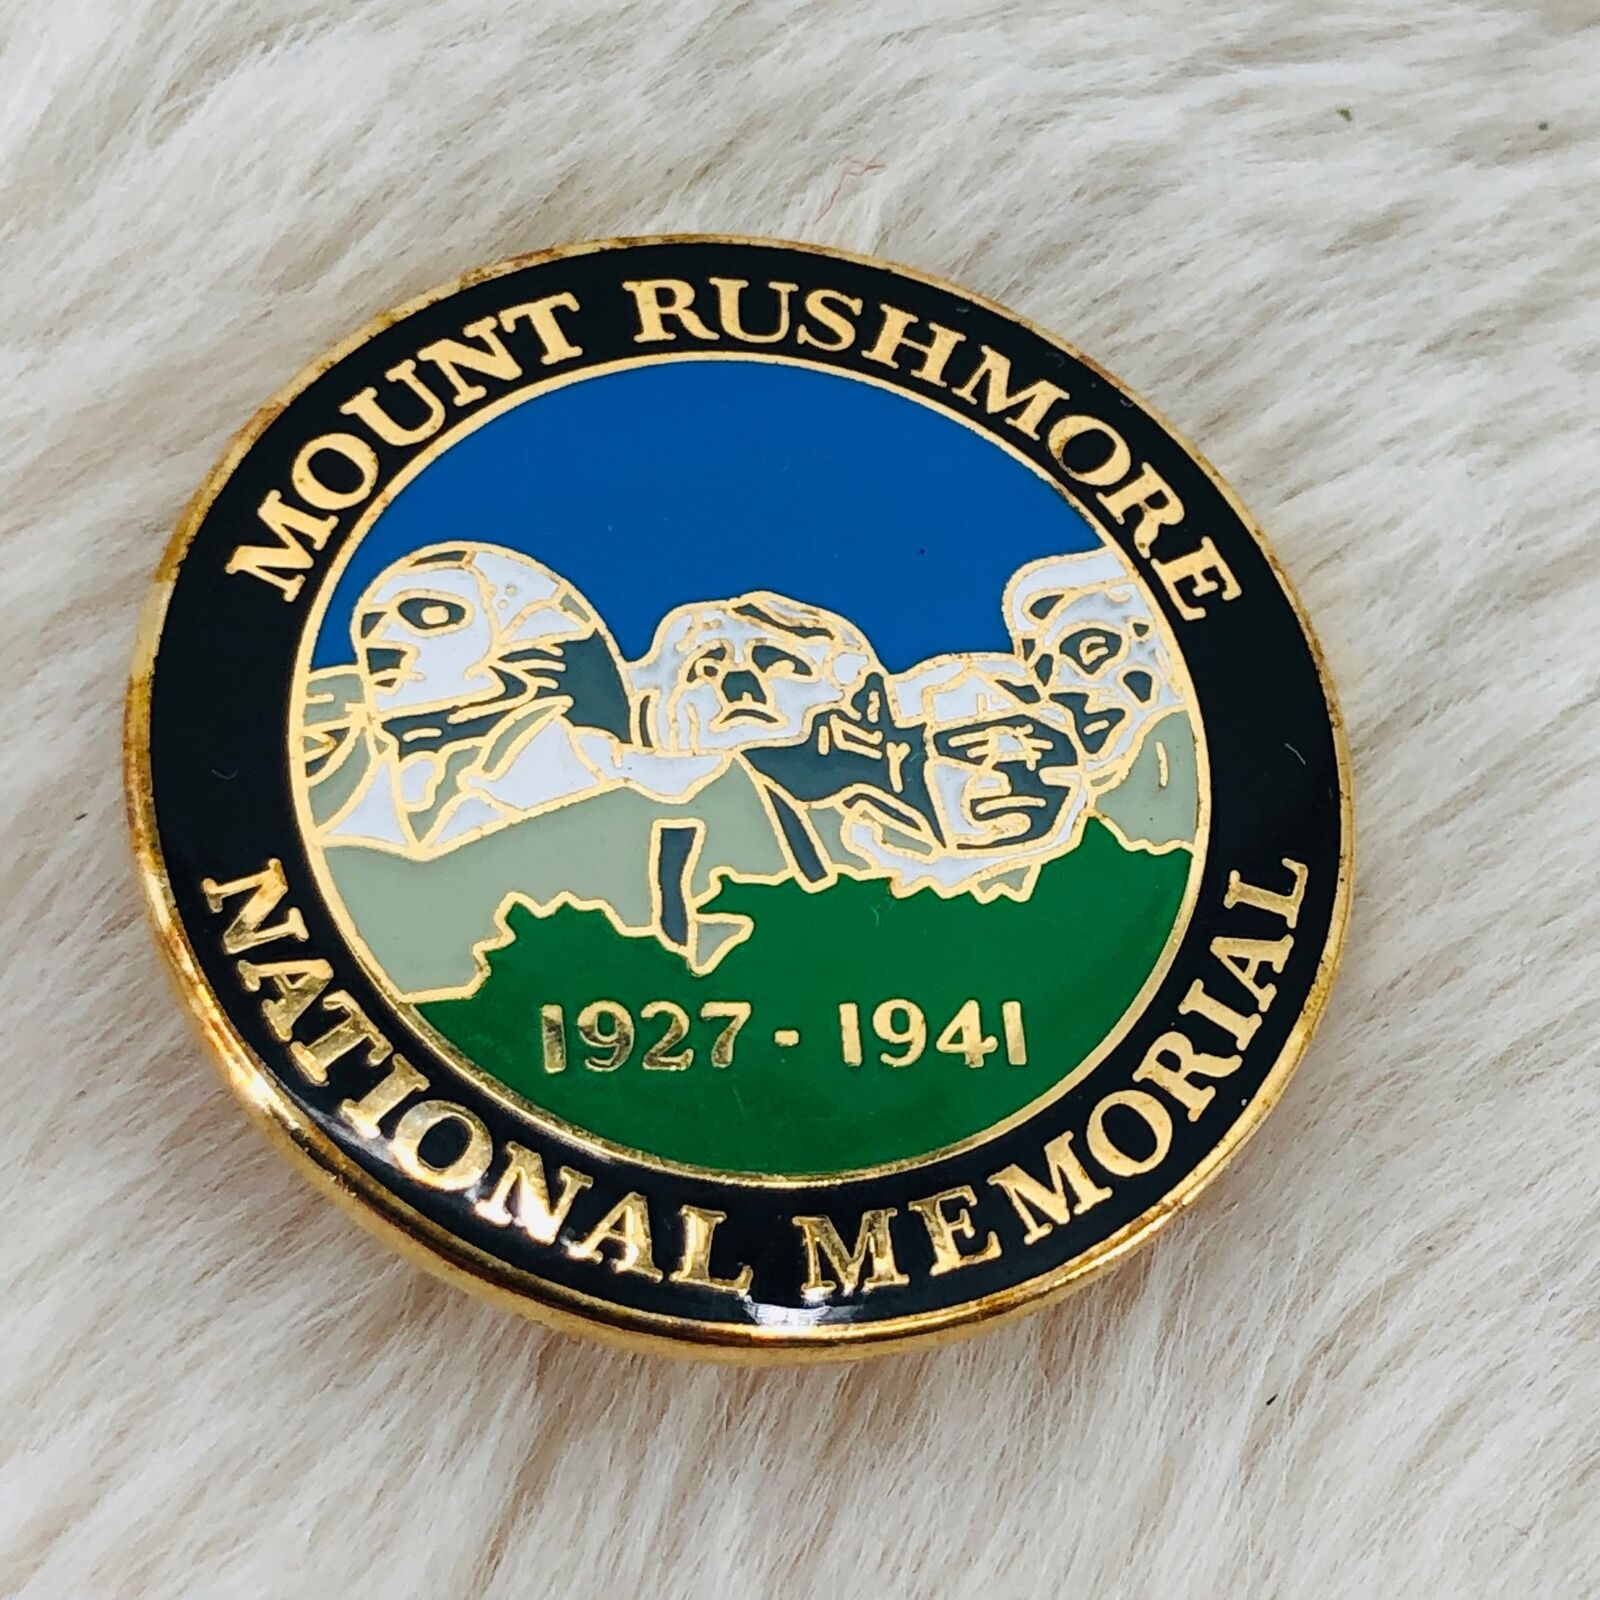 Mount Mt Rushmore National Memorial Souvenir Enamel Lapel Pin